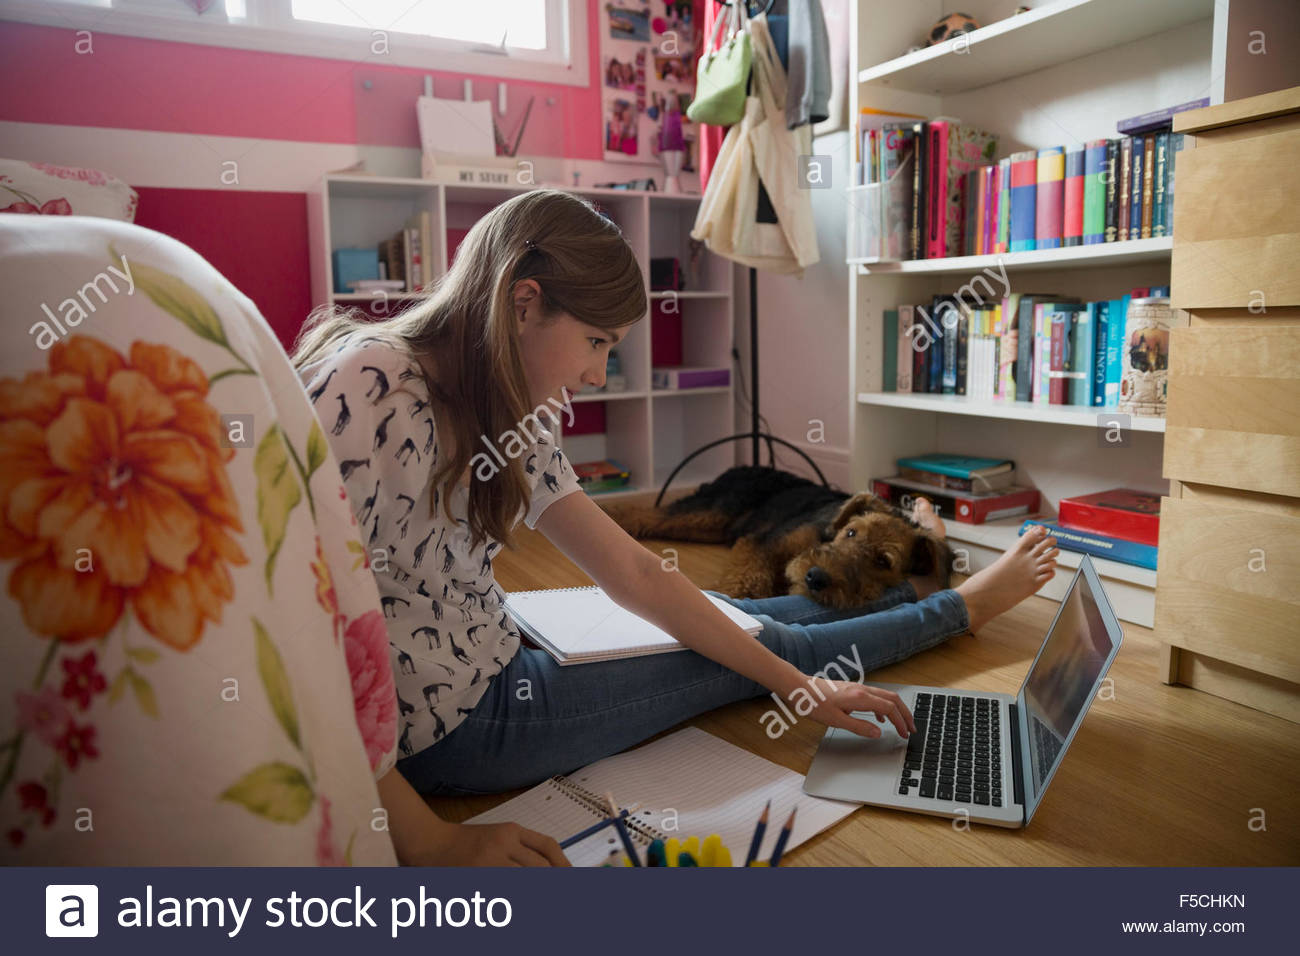 Dog sleeping on girl doing homework bedroom floor Stock Photo